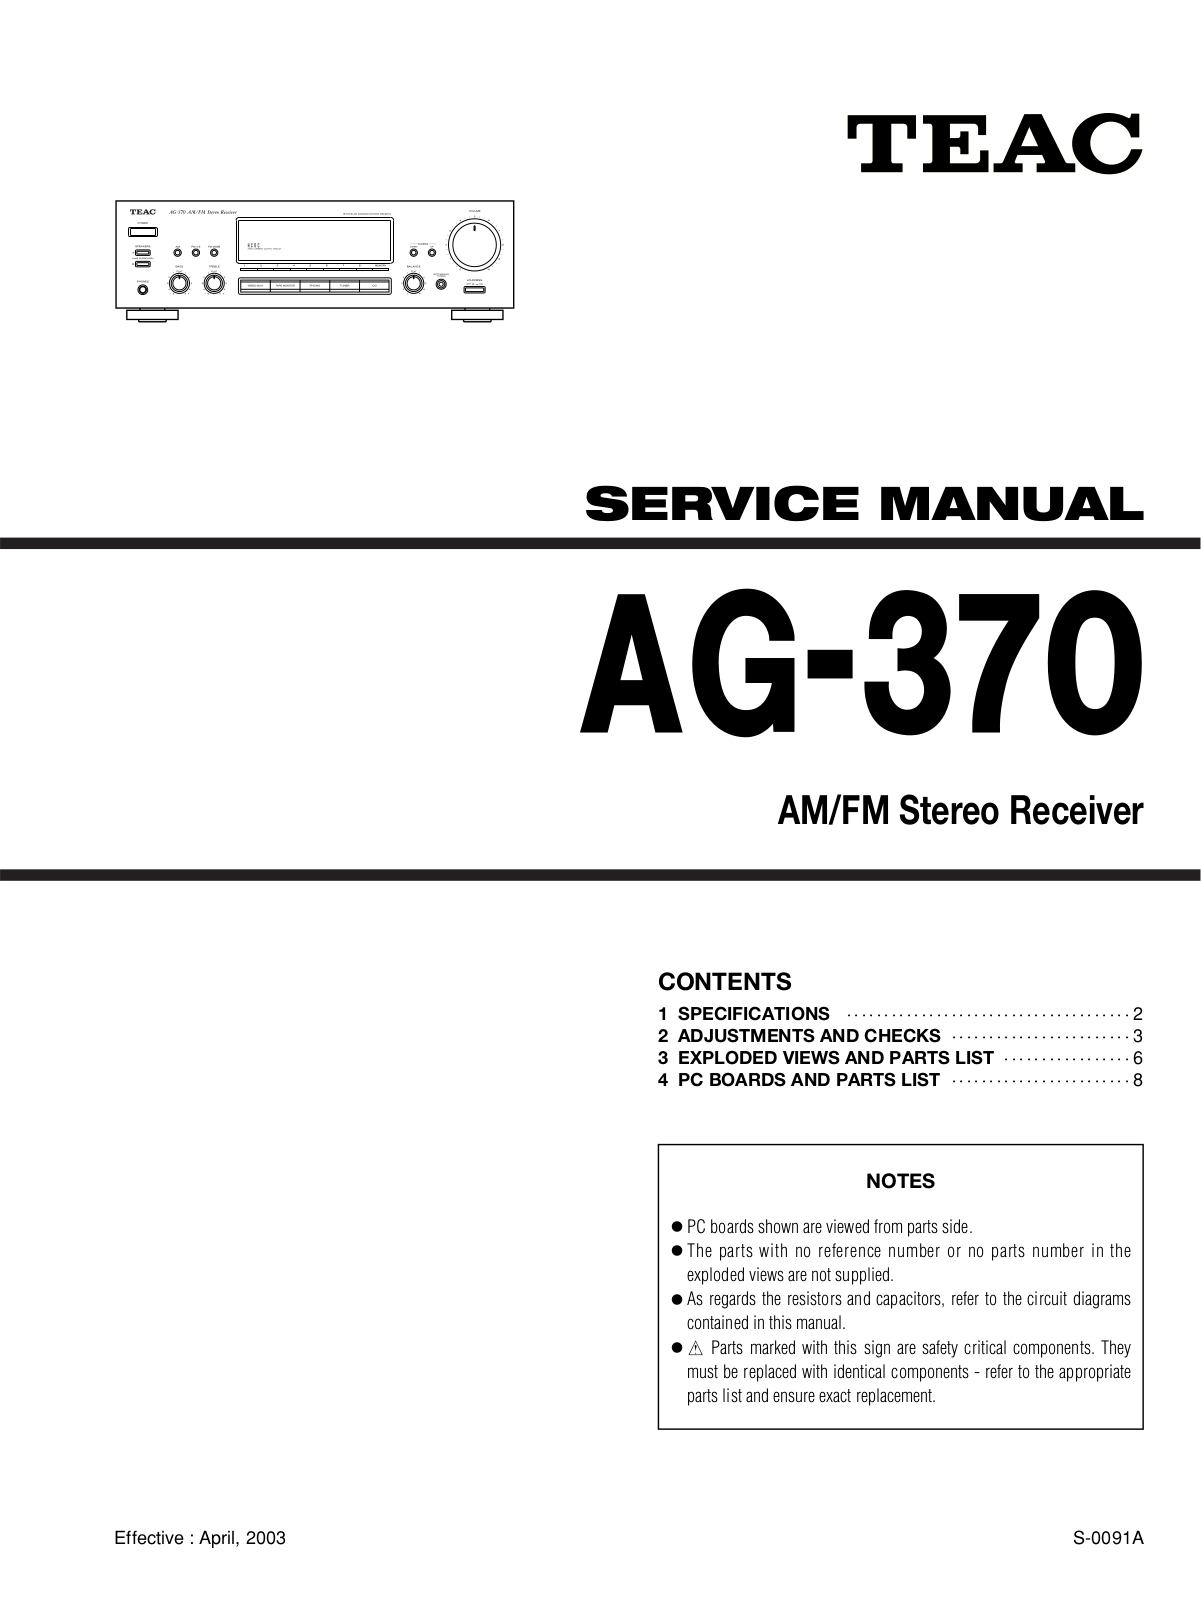 TEAC AG-370 Service manual